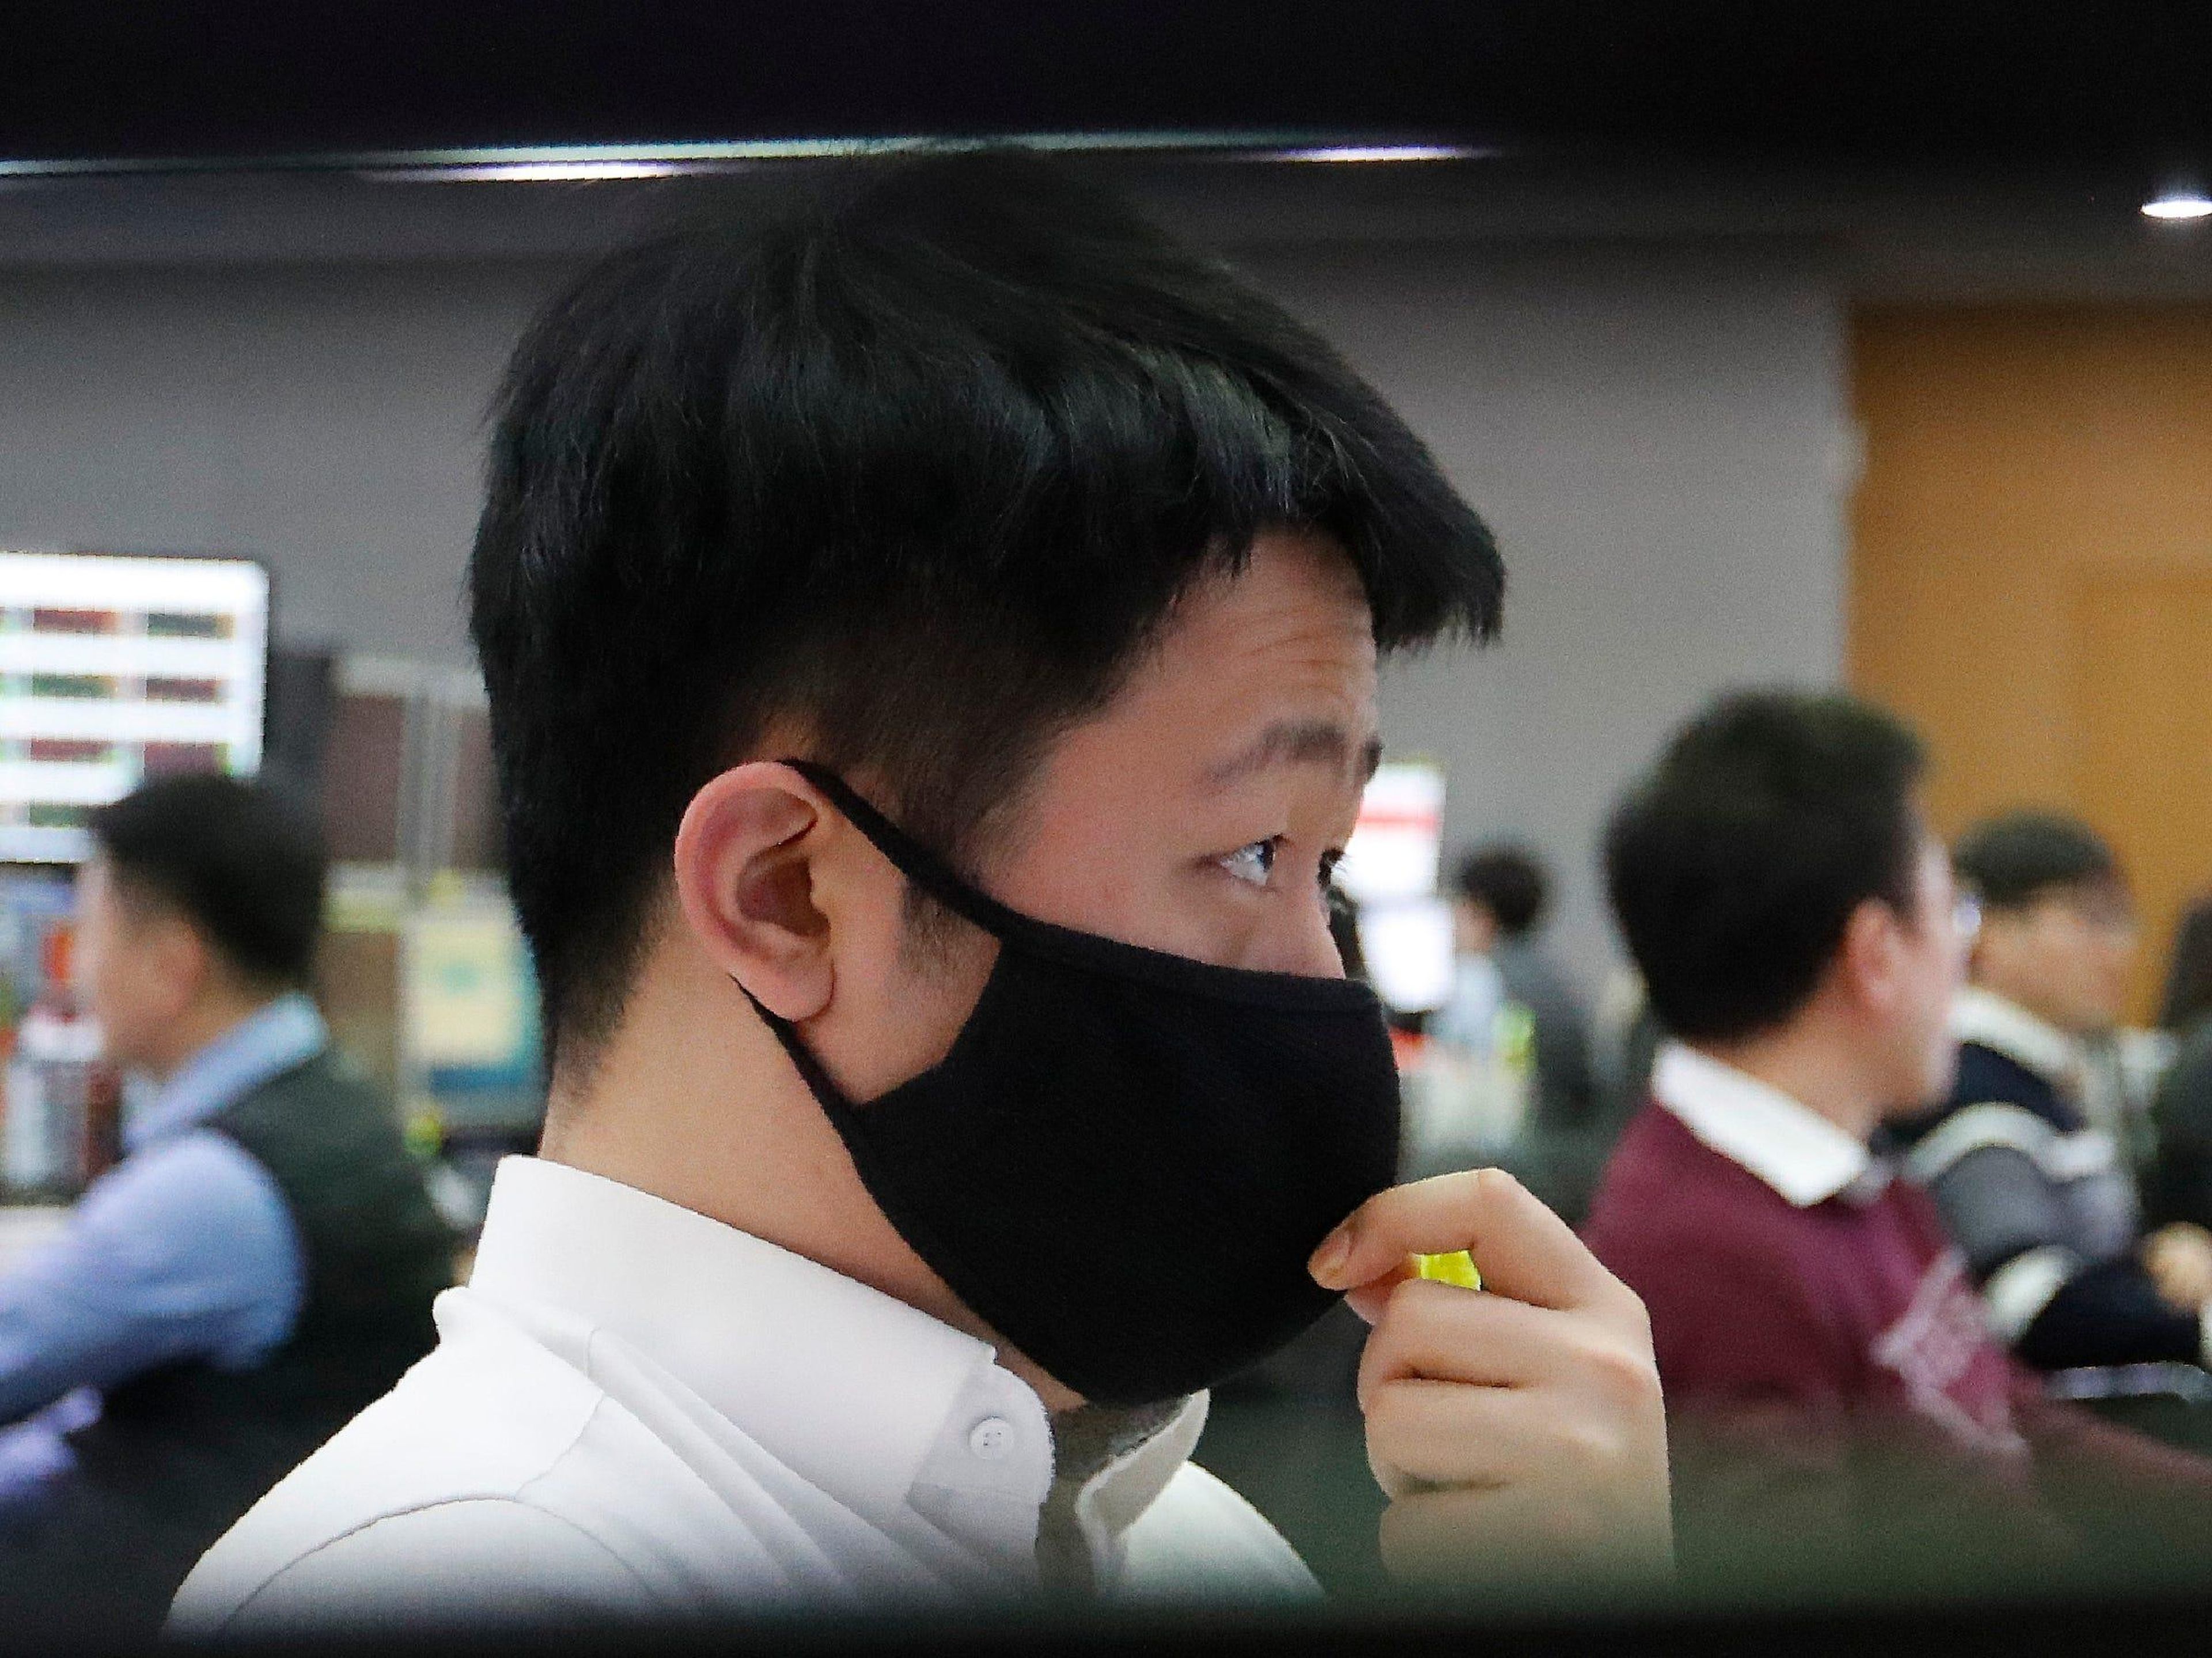 Un comerciante de divisas con una mascarilla observa los monitores en la sala de comercio de divisas.